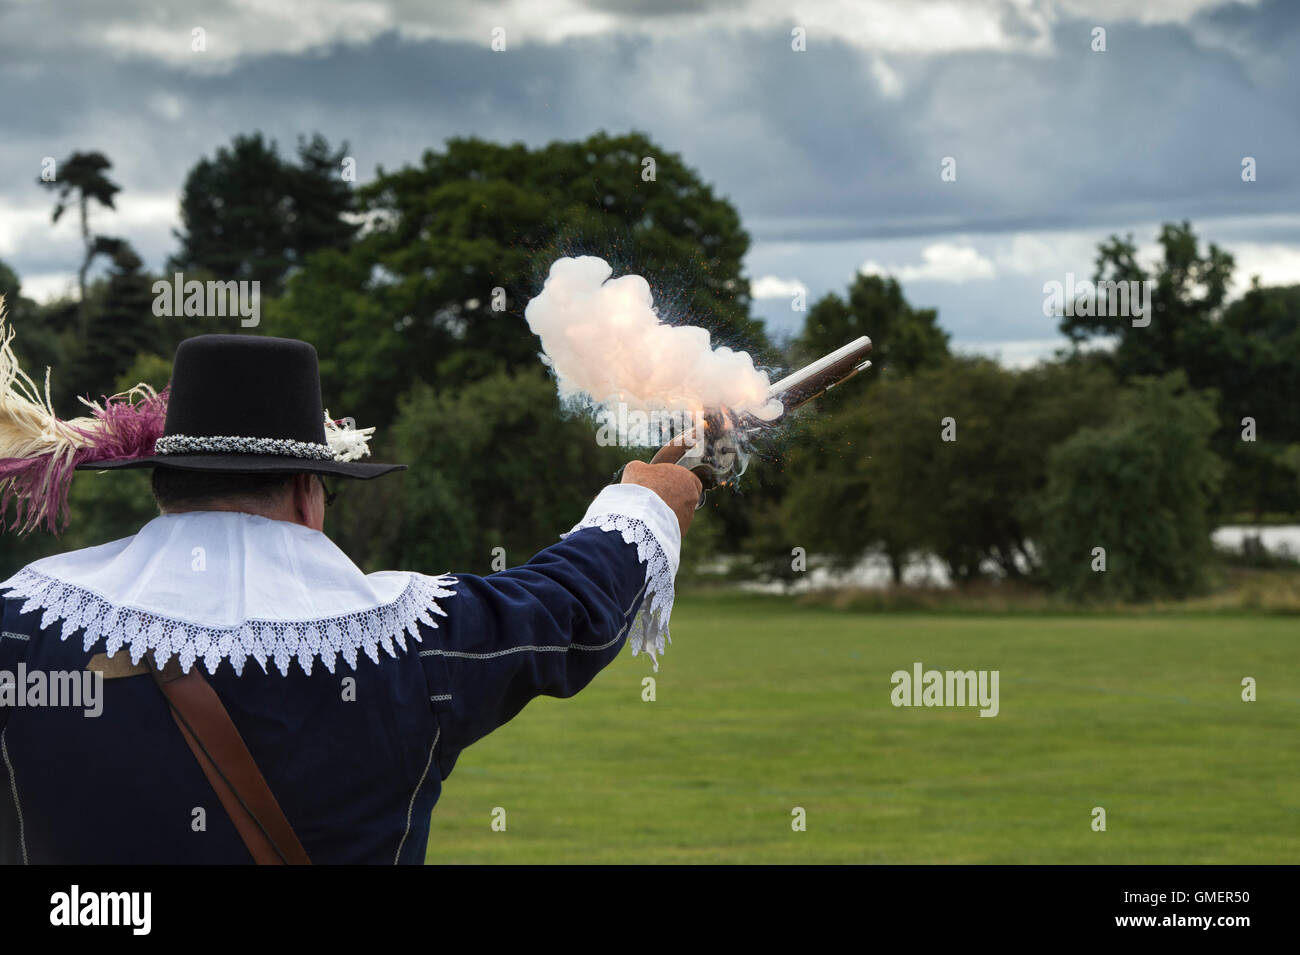 Guerra Civile Inglese Royalist soldato sparare la sua wheelock pistola militare ad una rievocazione storica, Spetchley Park, Worcestershire, Inghilterra Foto Stock